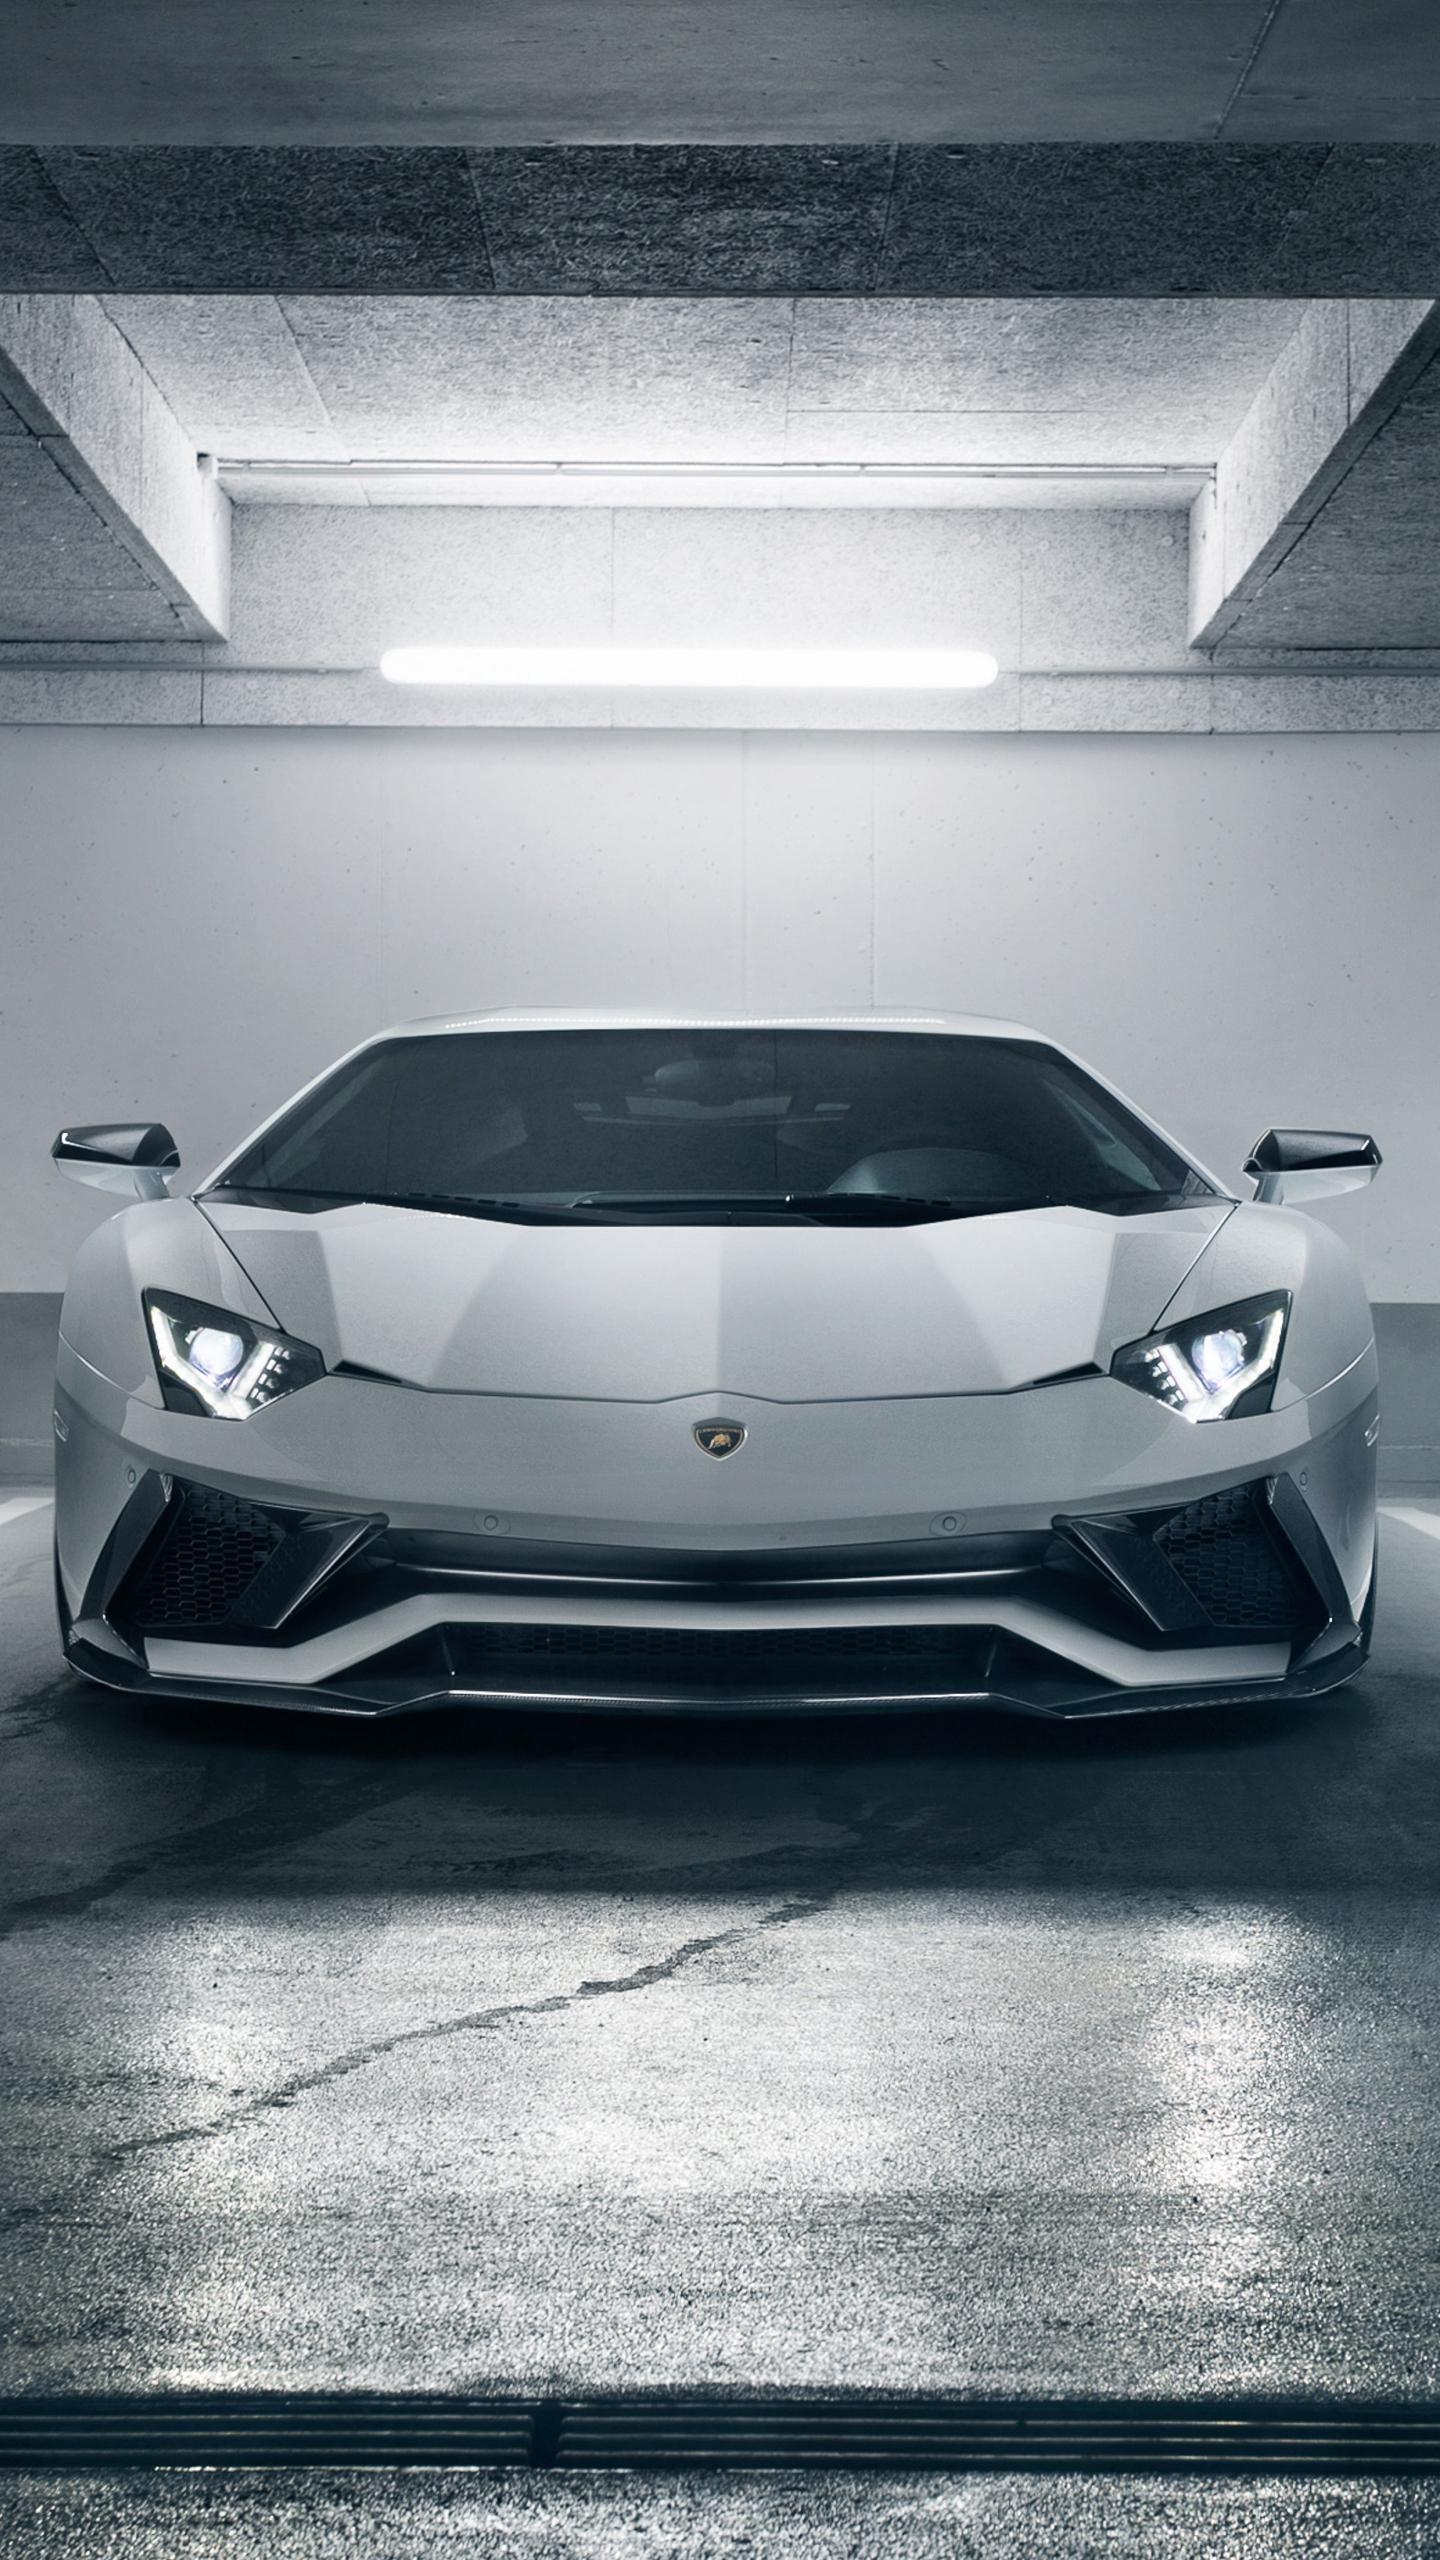 Lamborghini Wallpapers Free HD Download 500 HQ  Unsplash